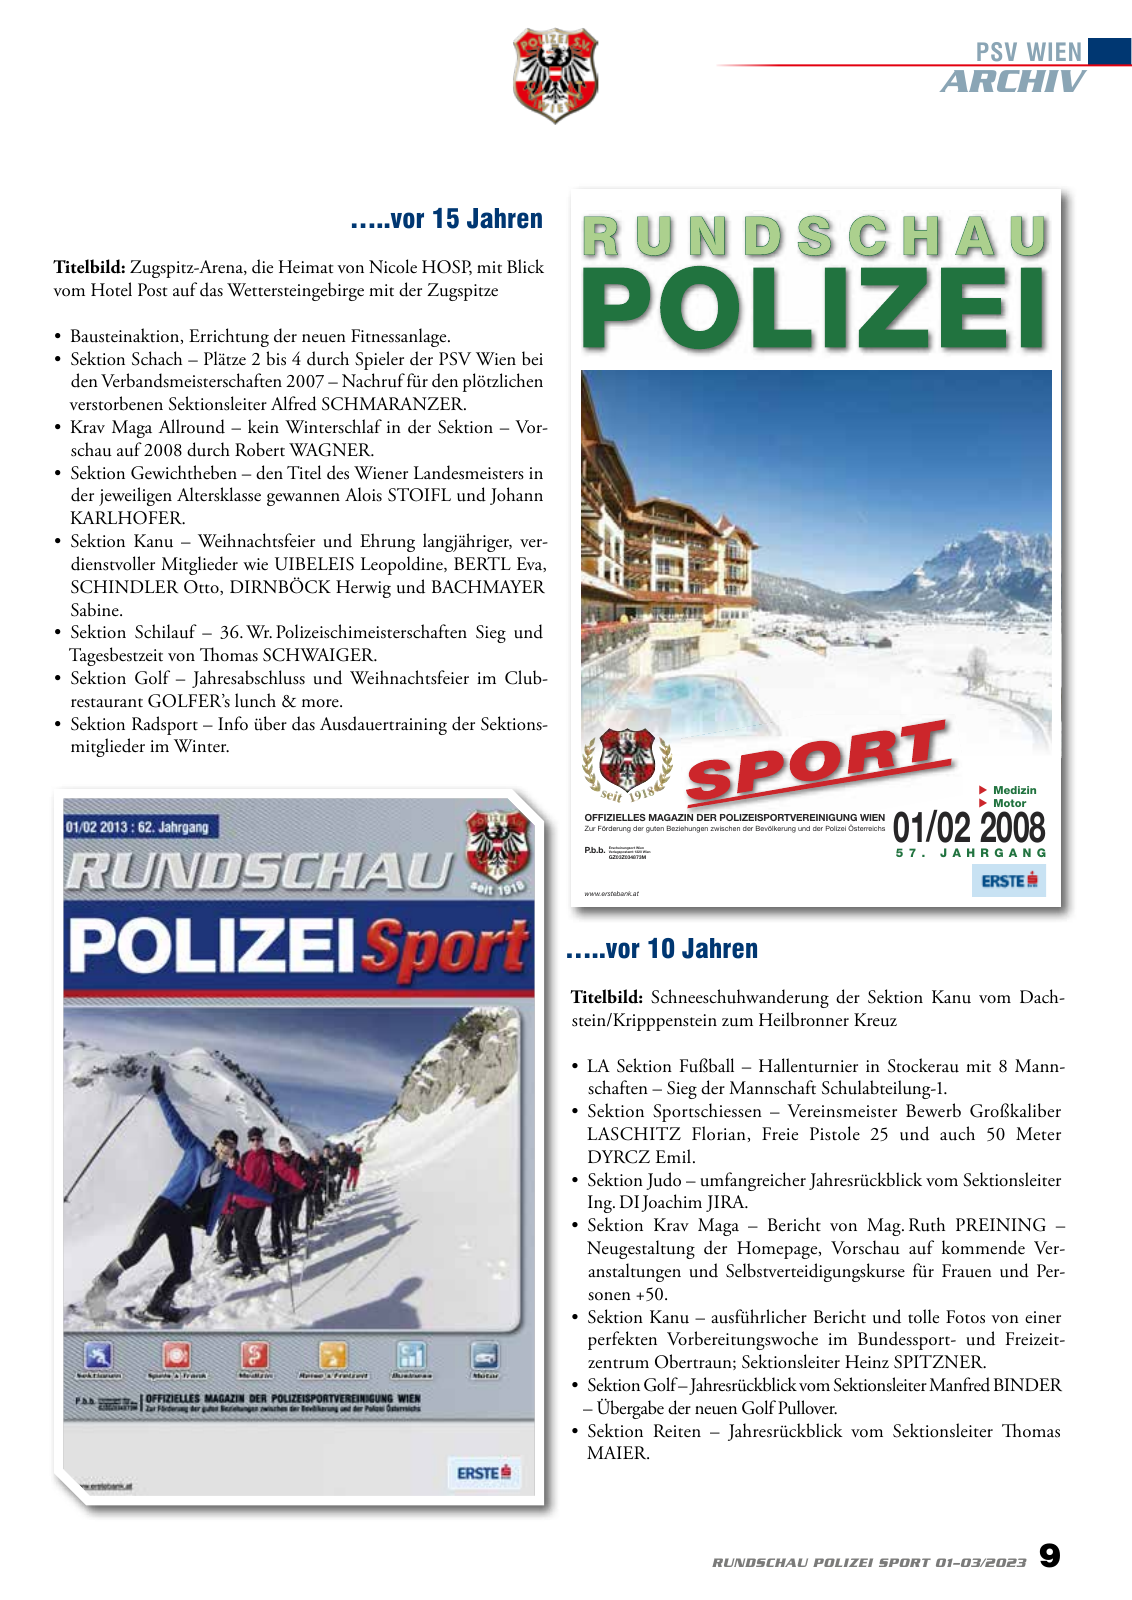 Vorschau Rundschau Polizei Sport 01-03/2023 Seite 9